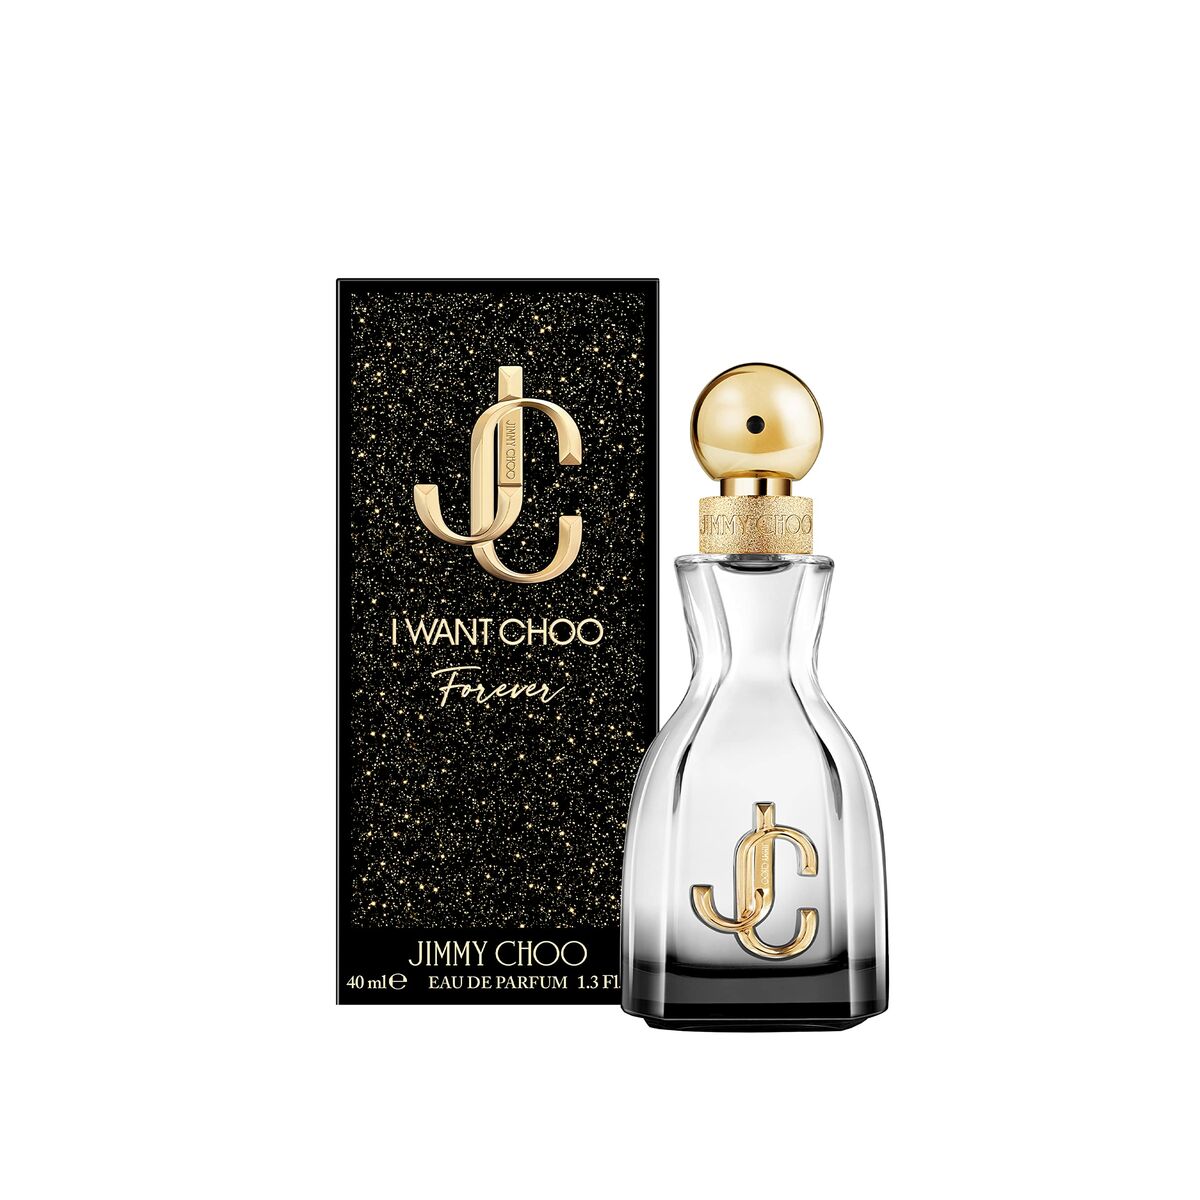 Women's Perfume Jimmy Choo EDP 40 ml I Want Choo Forever-0